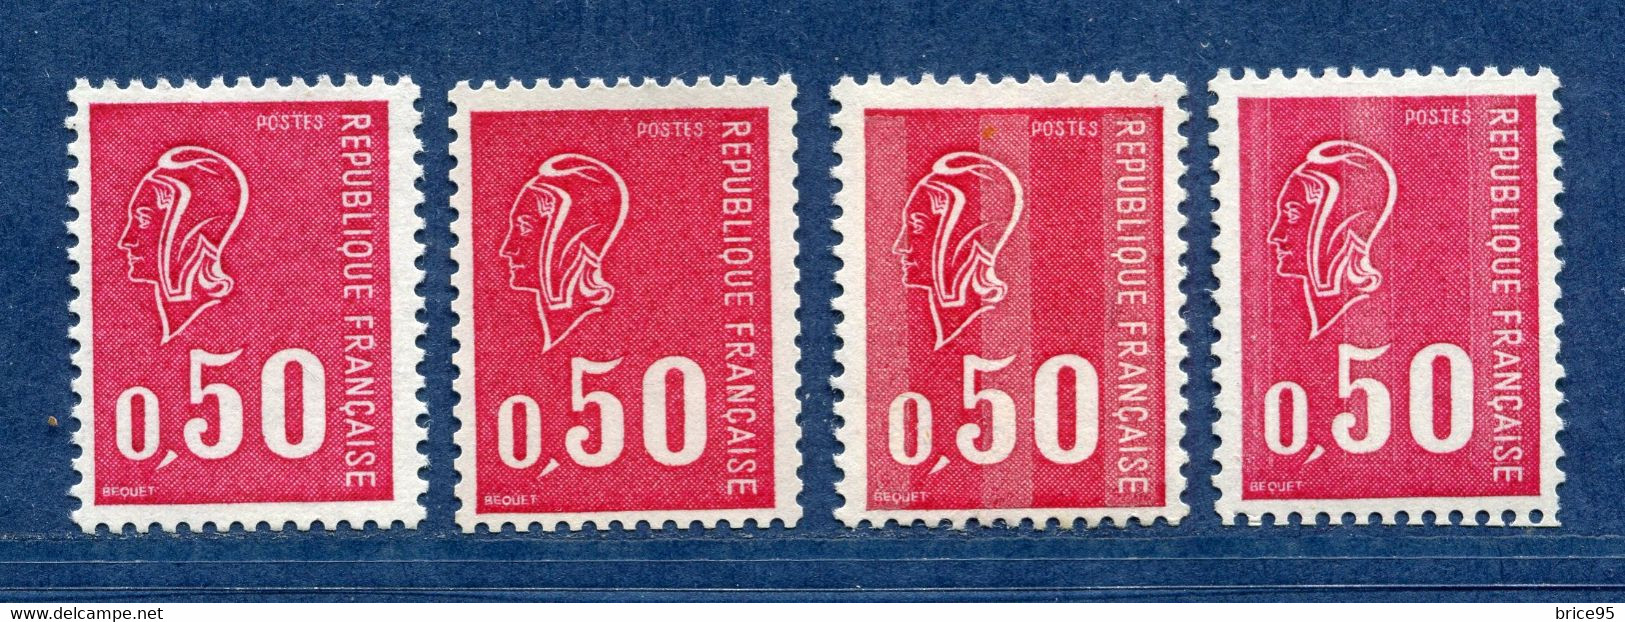 ⭐ France - Variété - YT N° 1664 B - Numéro Rouge - Couleurs - Pétouilles - Neuf Sans Charnière - 1971 ⭐ - Ungebraucht